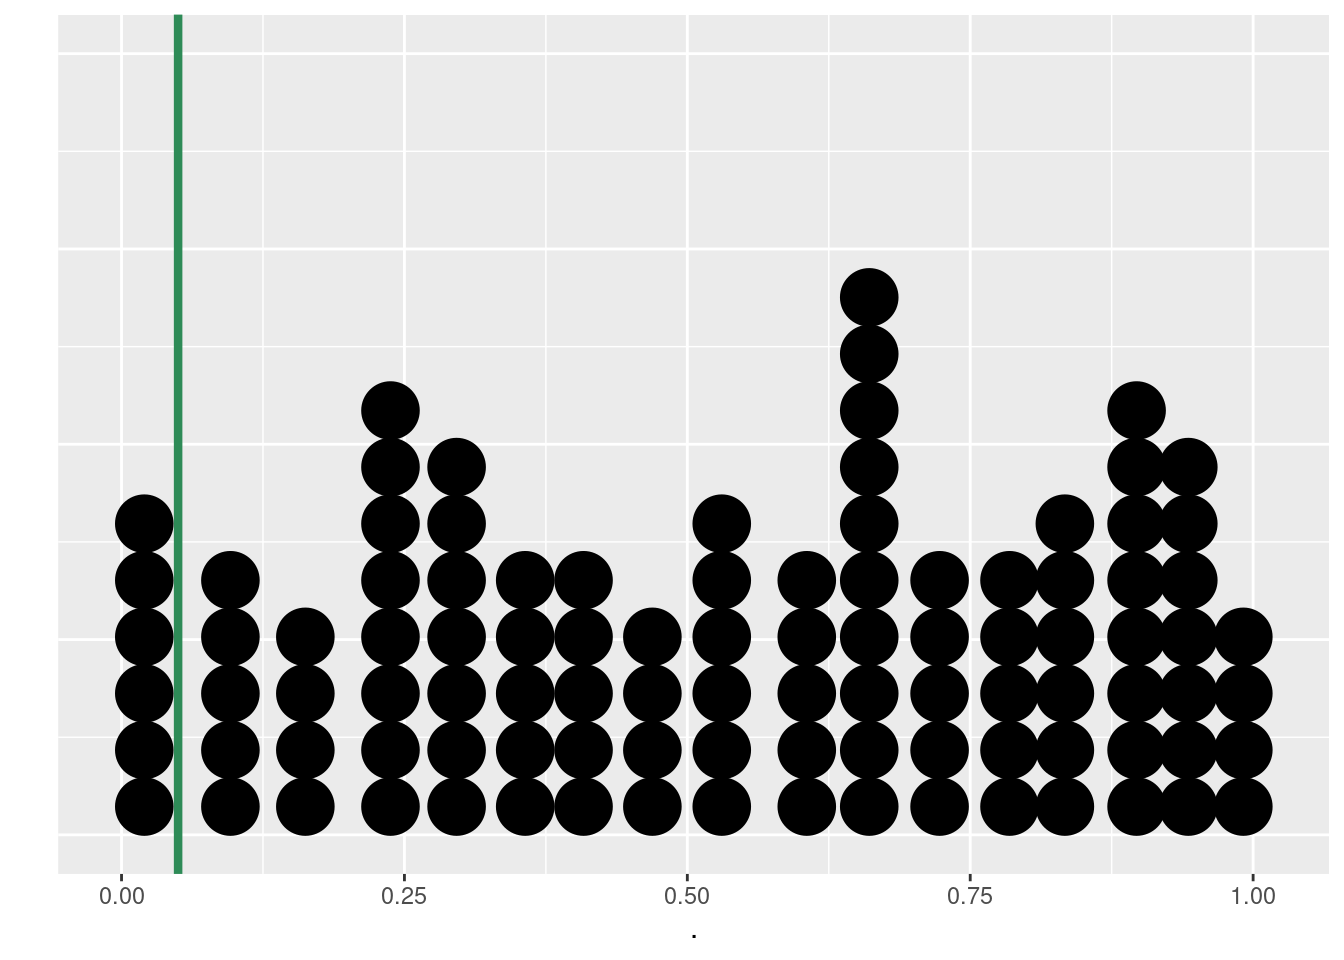 p-valores simulados para várias amostragens de uma população. A probabilidade de 5% é representada pela linha vertical verde.